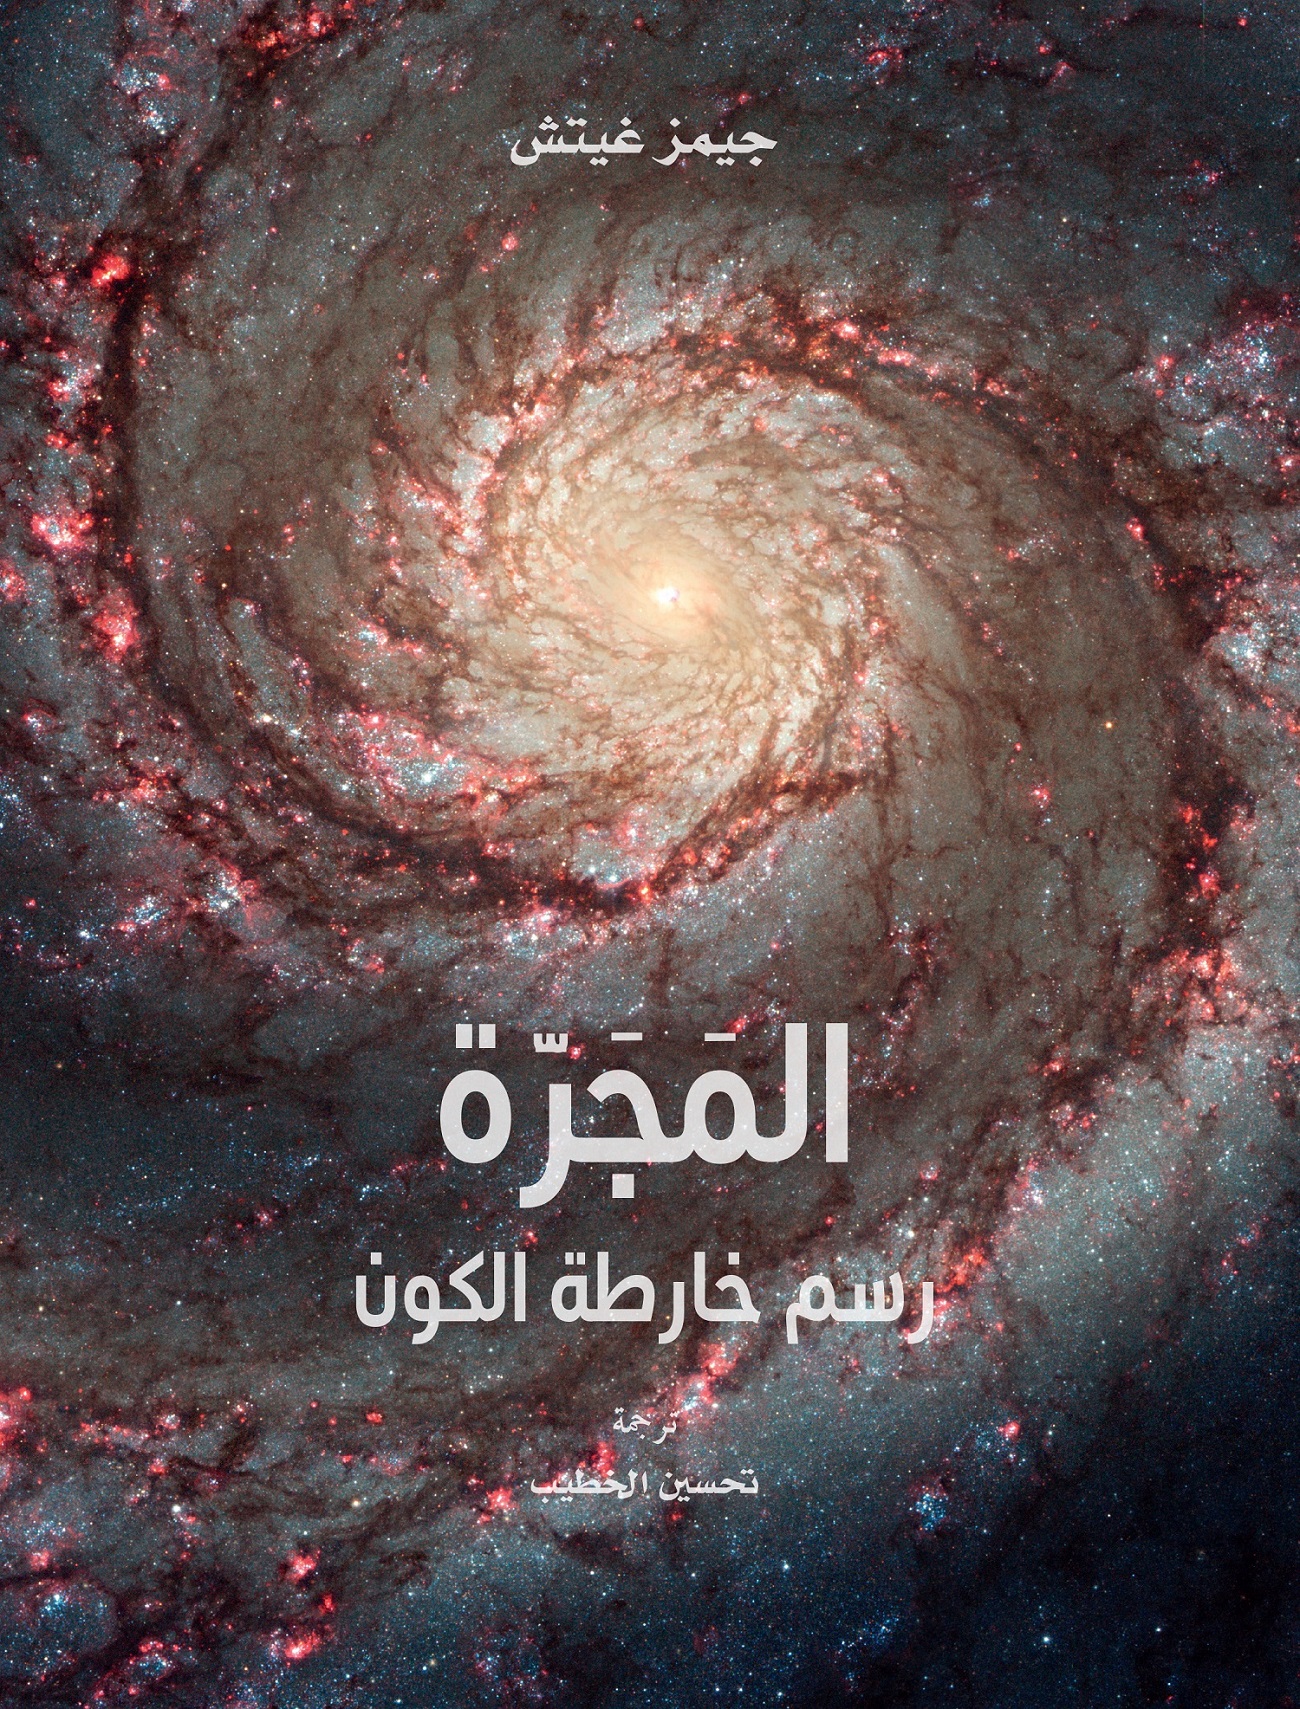 المجرة رسم خارطة الكون